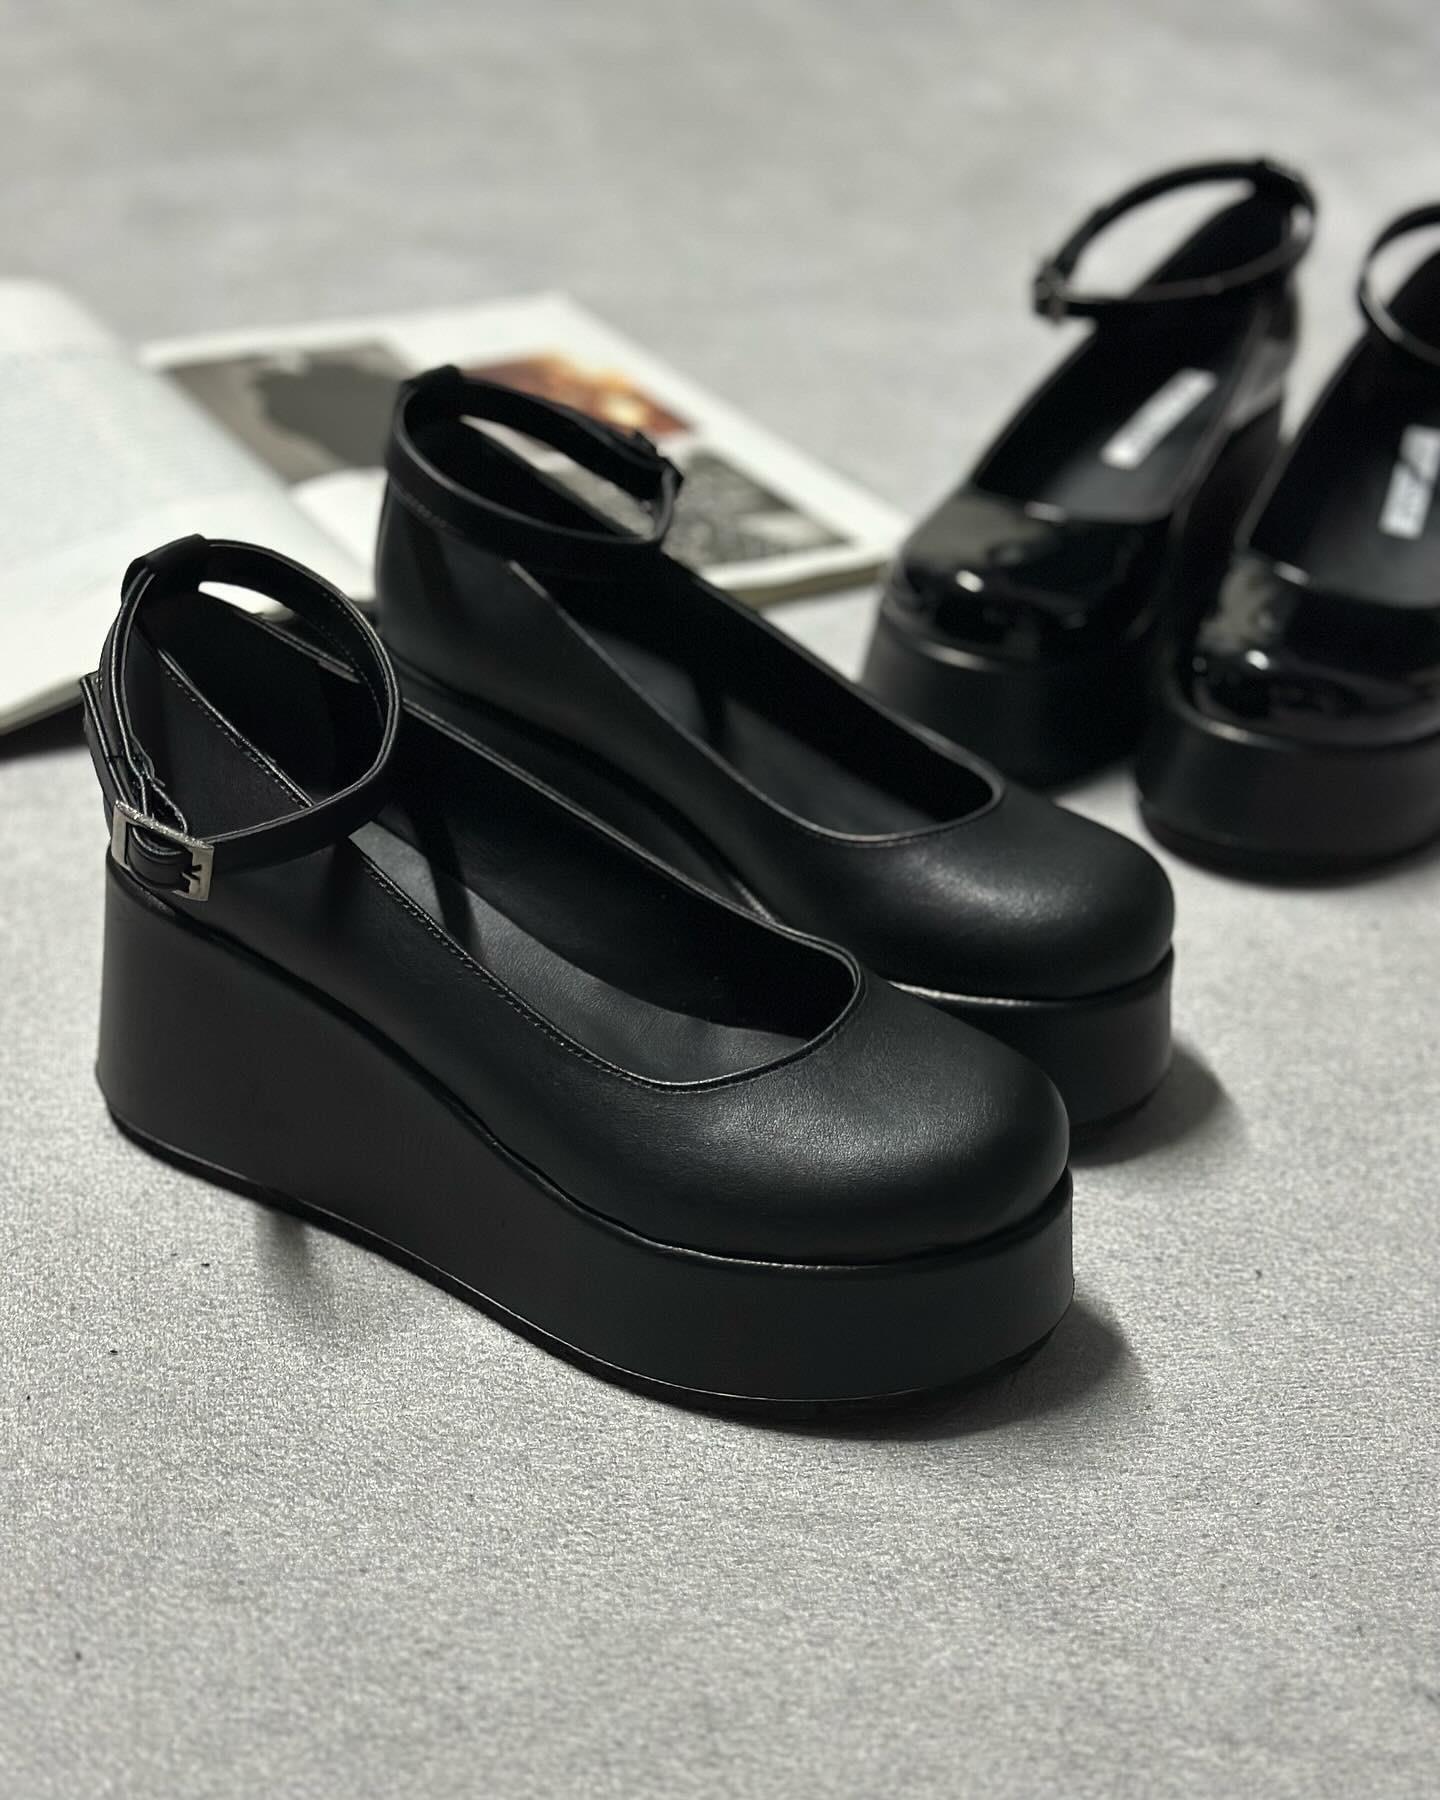 Marlenbo Platform Dolgu Topuk Bilekten Bağlamalı Kadın Ayakkabı - Siyah Cilt